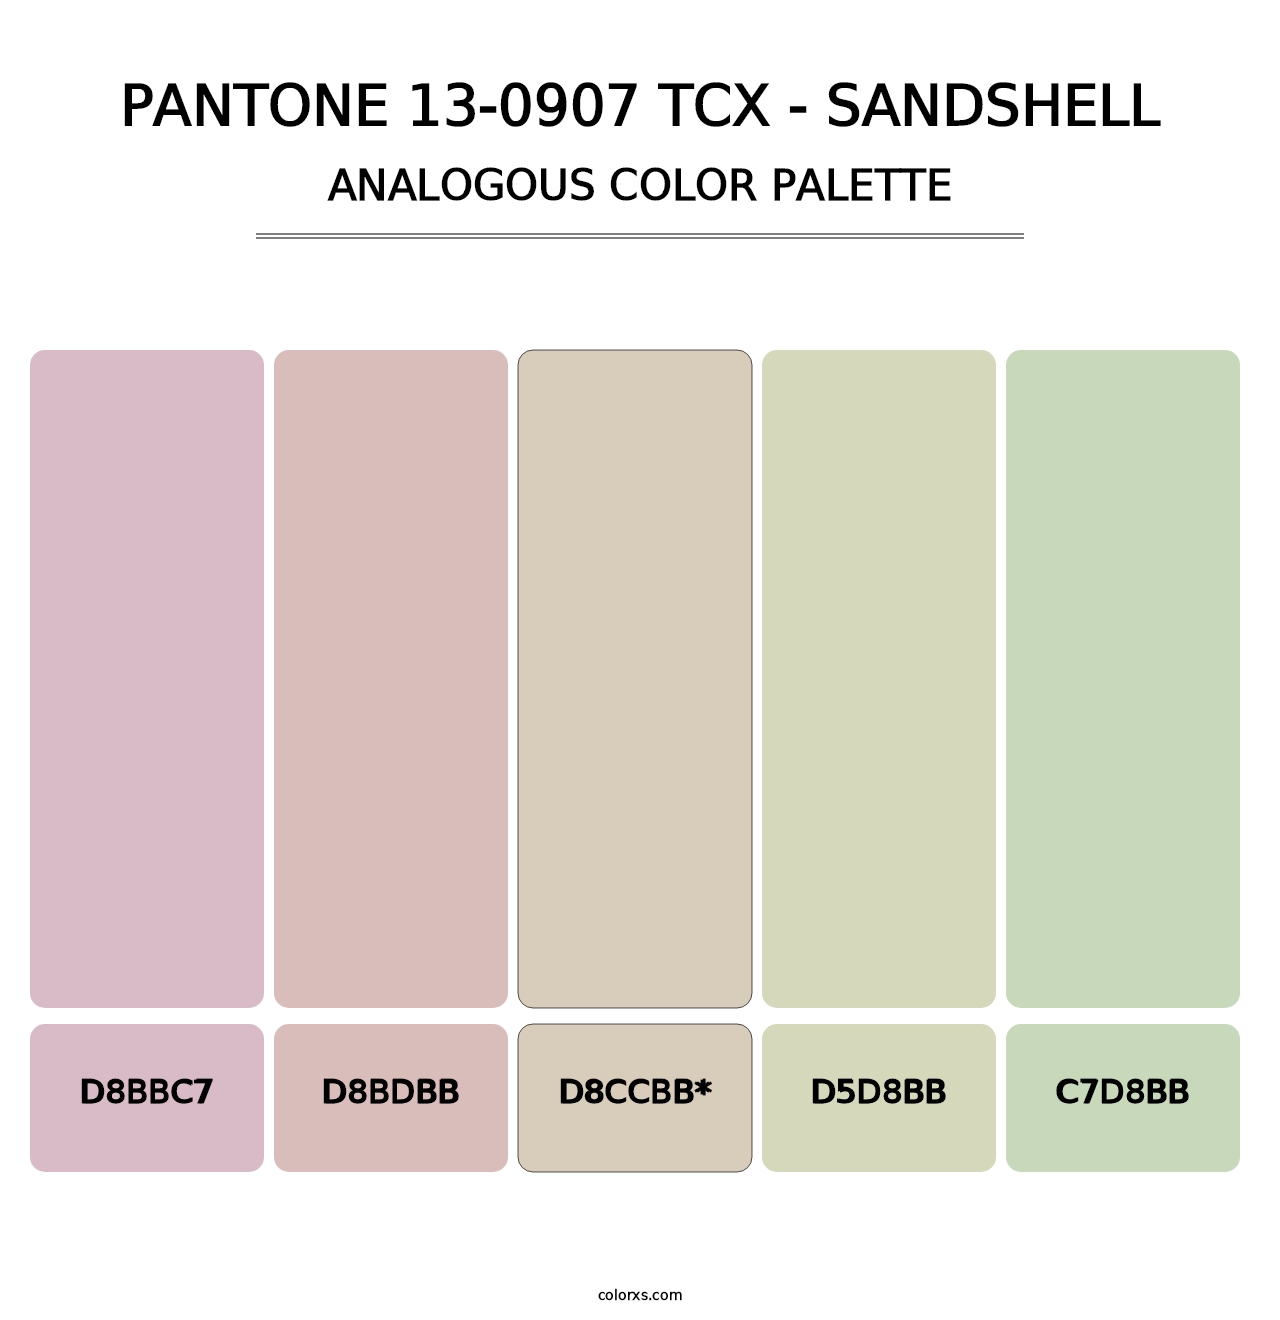 PANTONE 13-0907 TCX - Sandshell - Analogous Color Palette